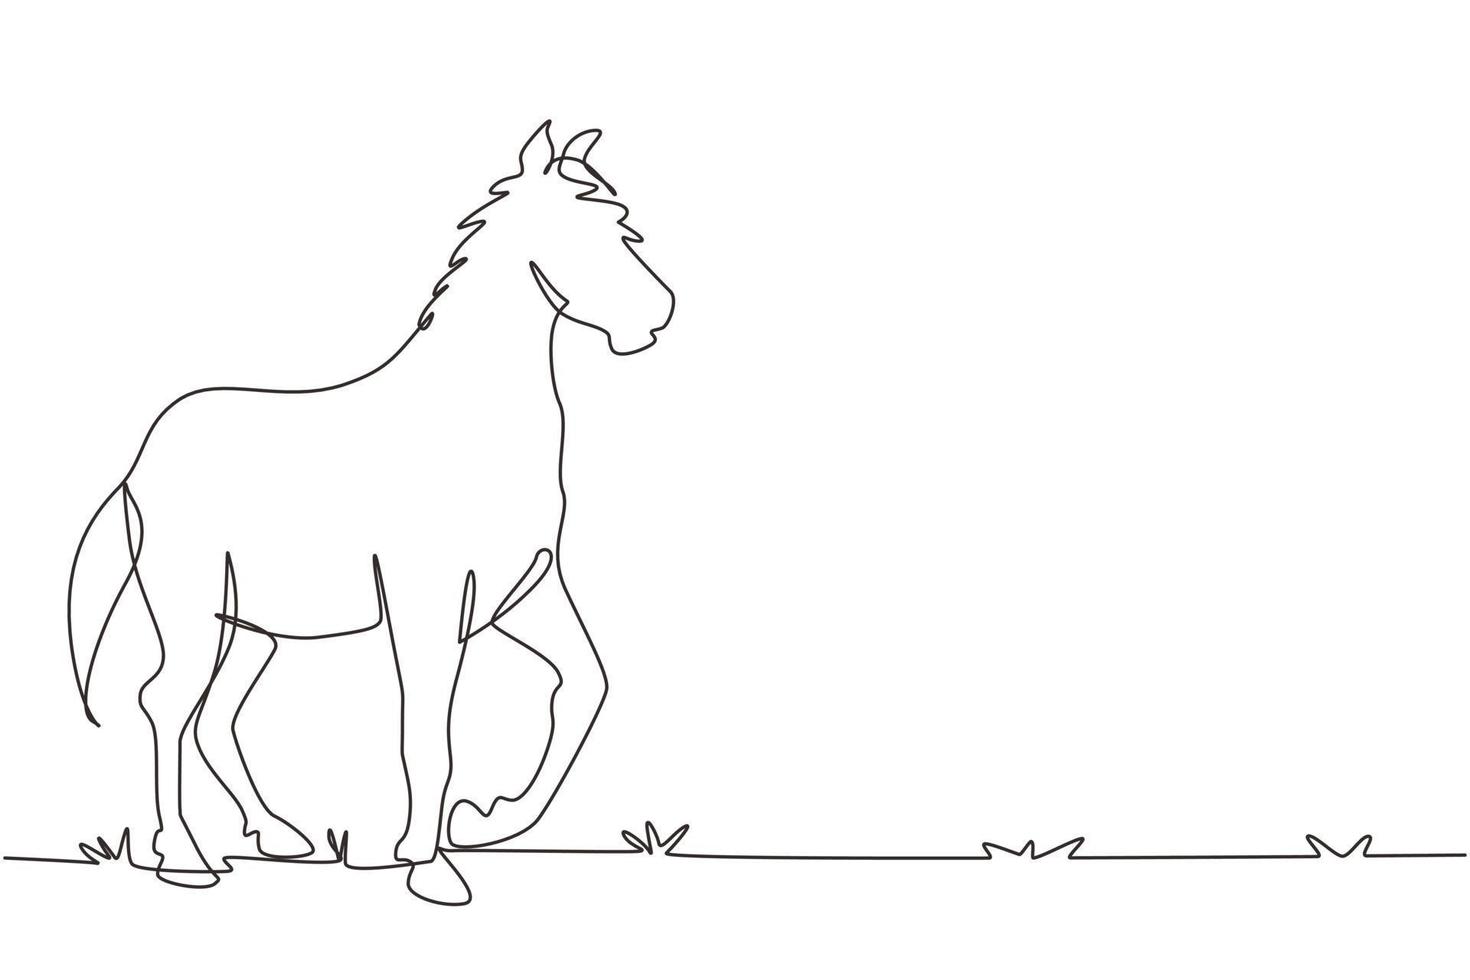 único desenho de uma linha executando o esboço do cavalo do garanhão árabe.  cavalo de raça pura galopando da raça árabe. símbolo de corrida de cavalos,  distintivo de esporte equestre. vetor gráfico